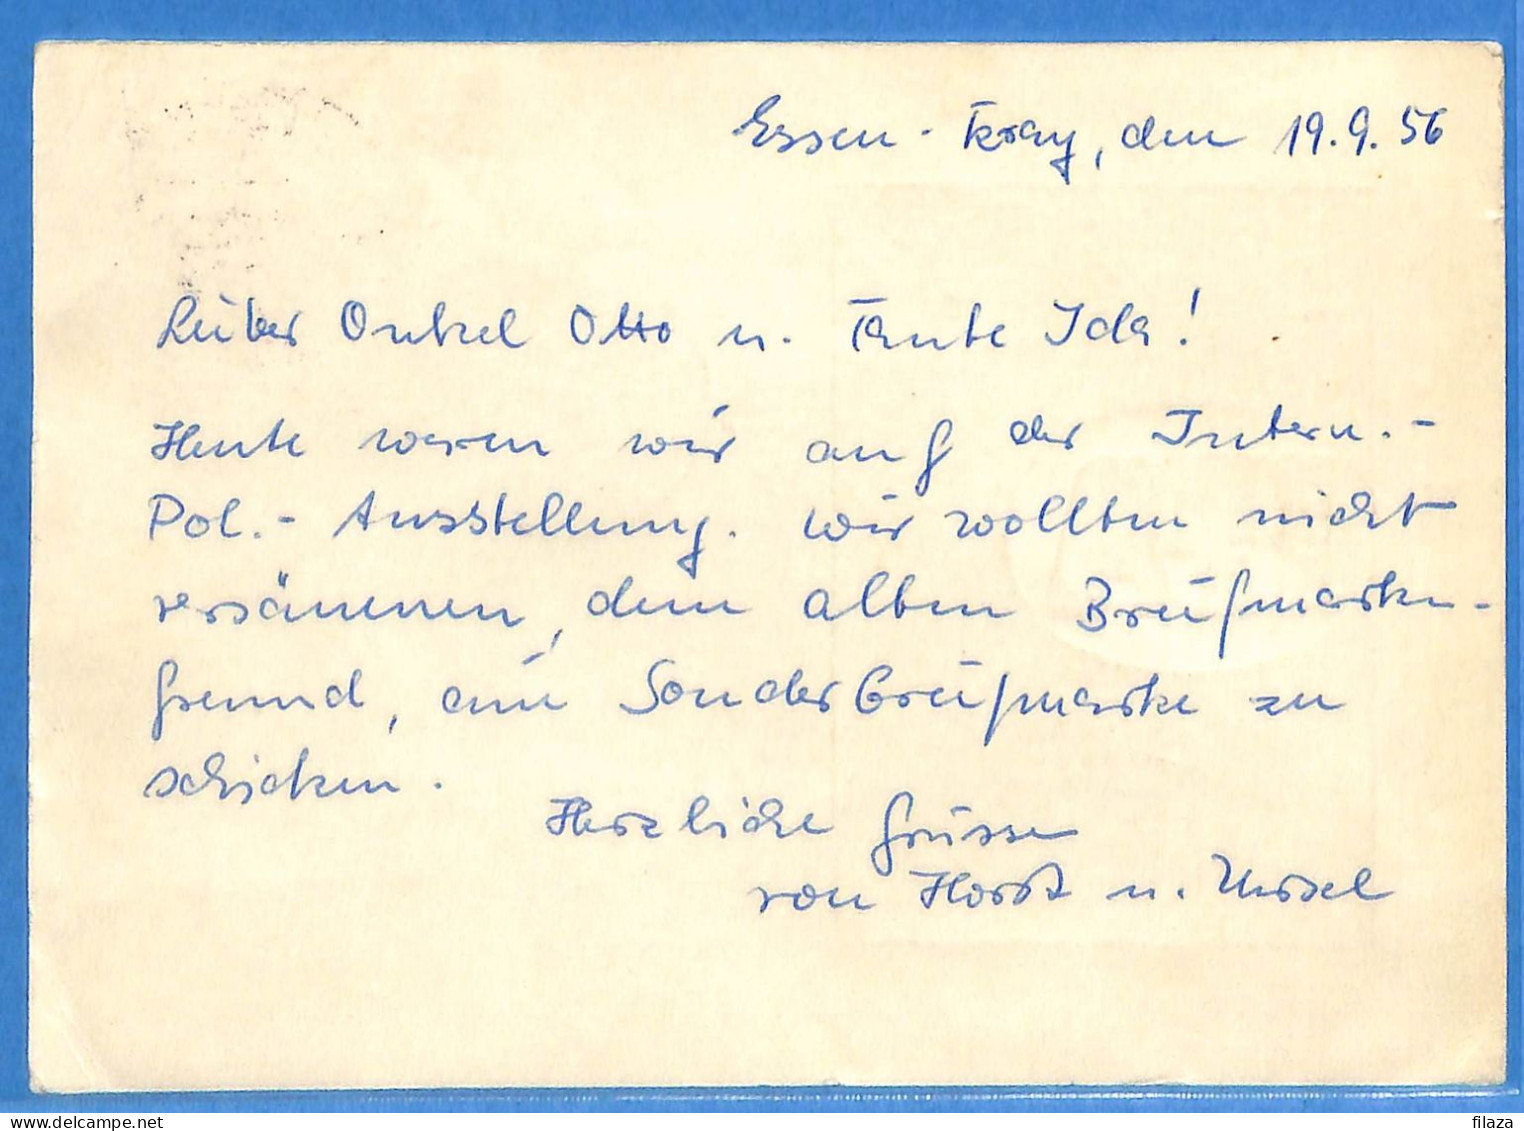 Allemagne Republique Federale 1956 - Carte Postale De Essen - G30899 - Brieven En Documenten